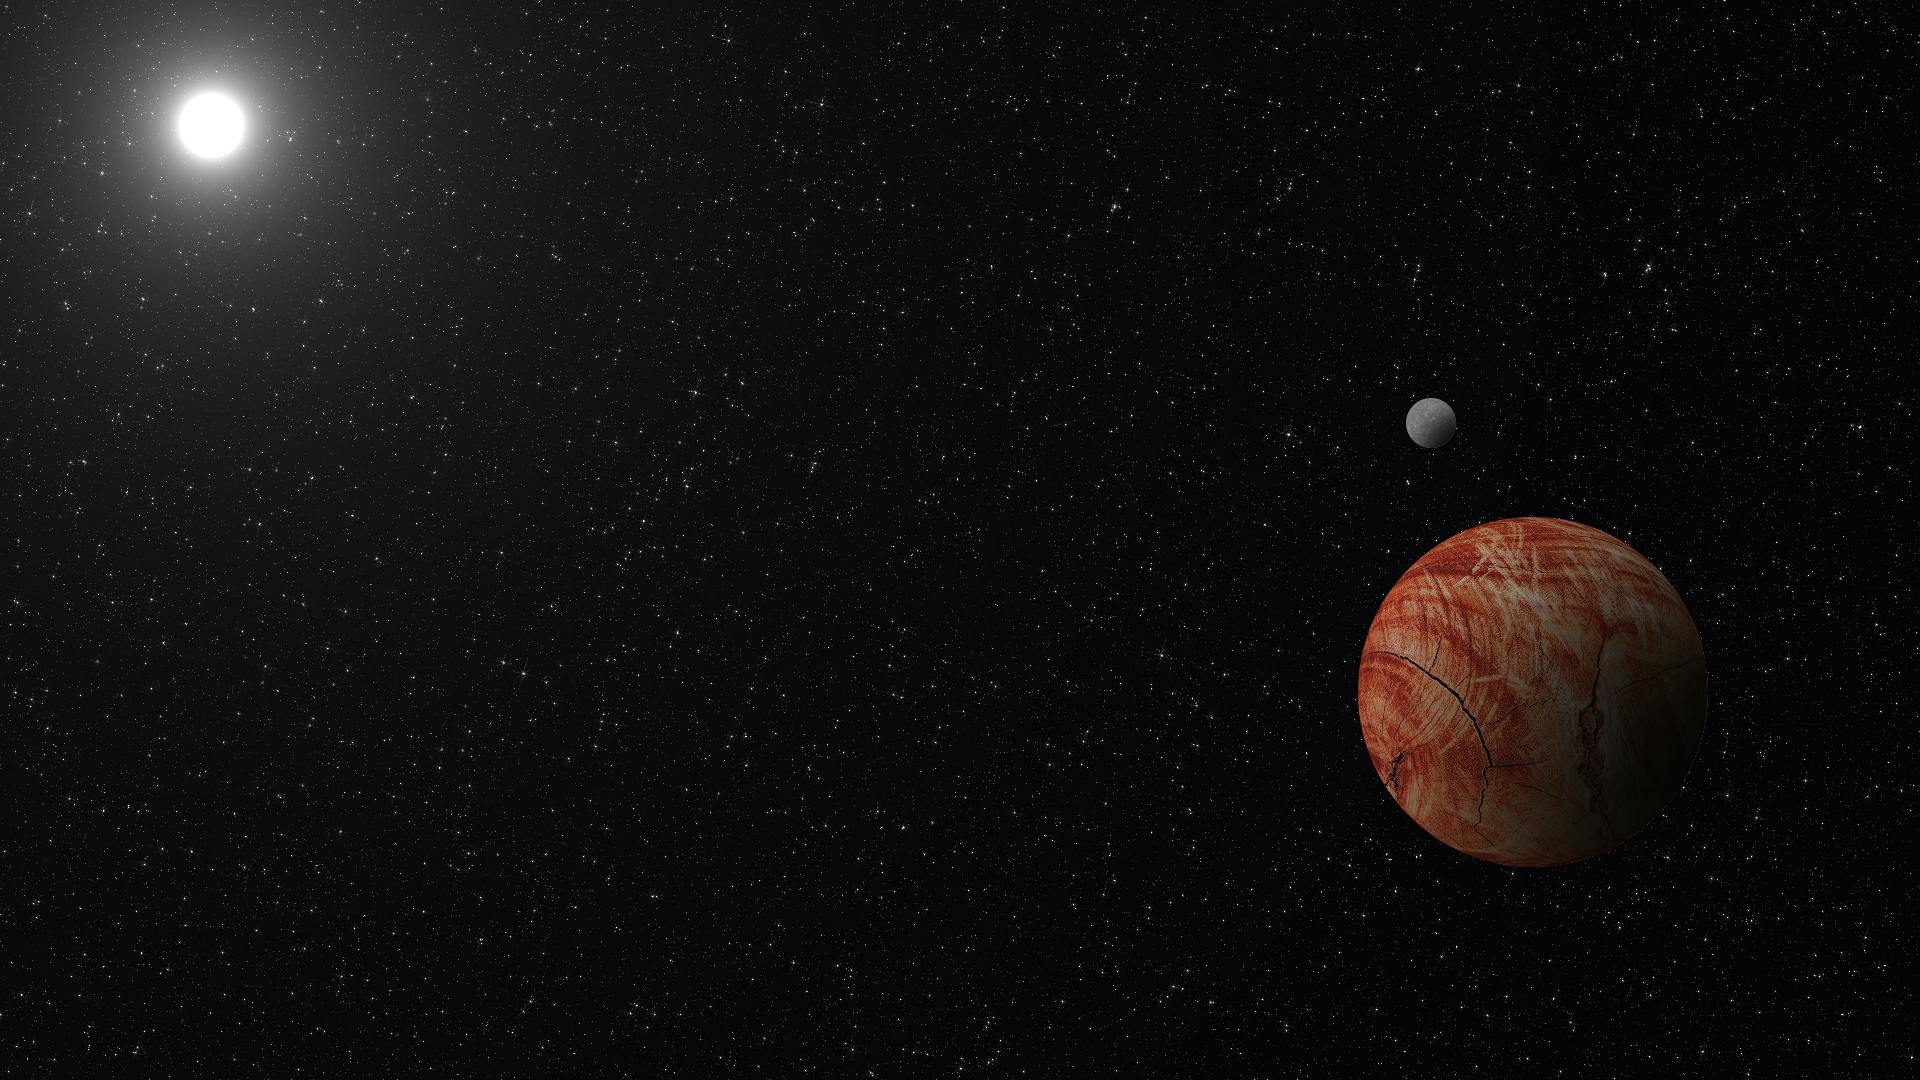 Orange planet with moon.